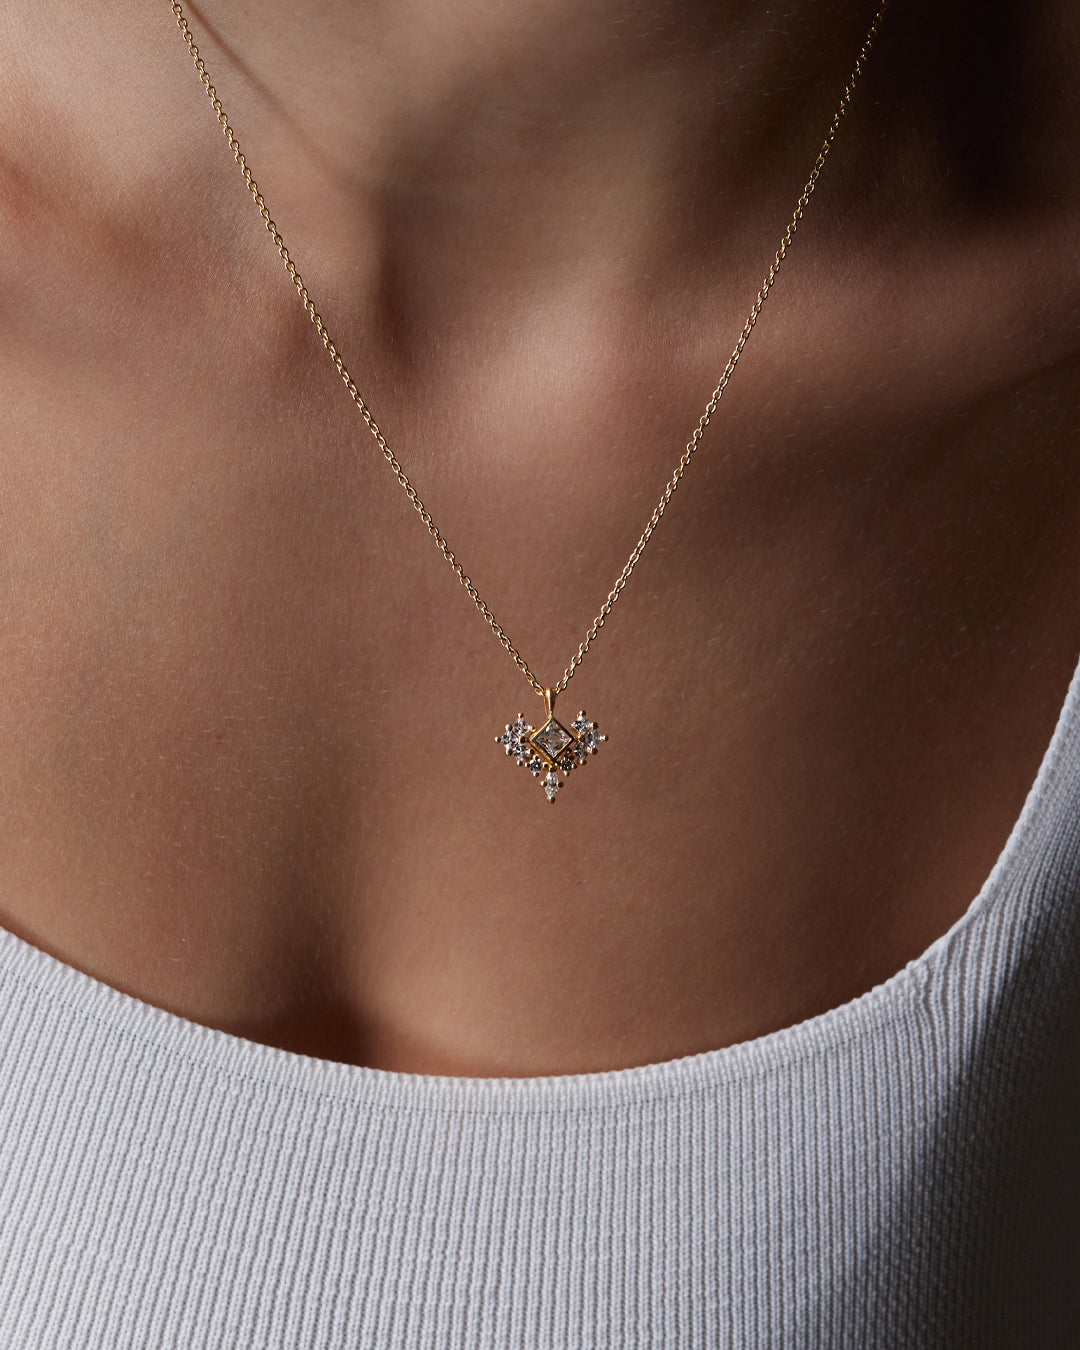 Catherine Diamond Necklace with Natural Diamonds